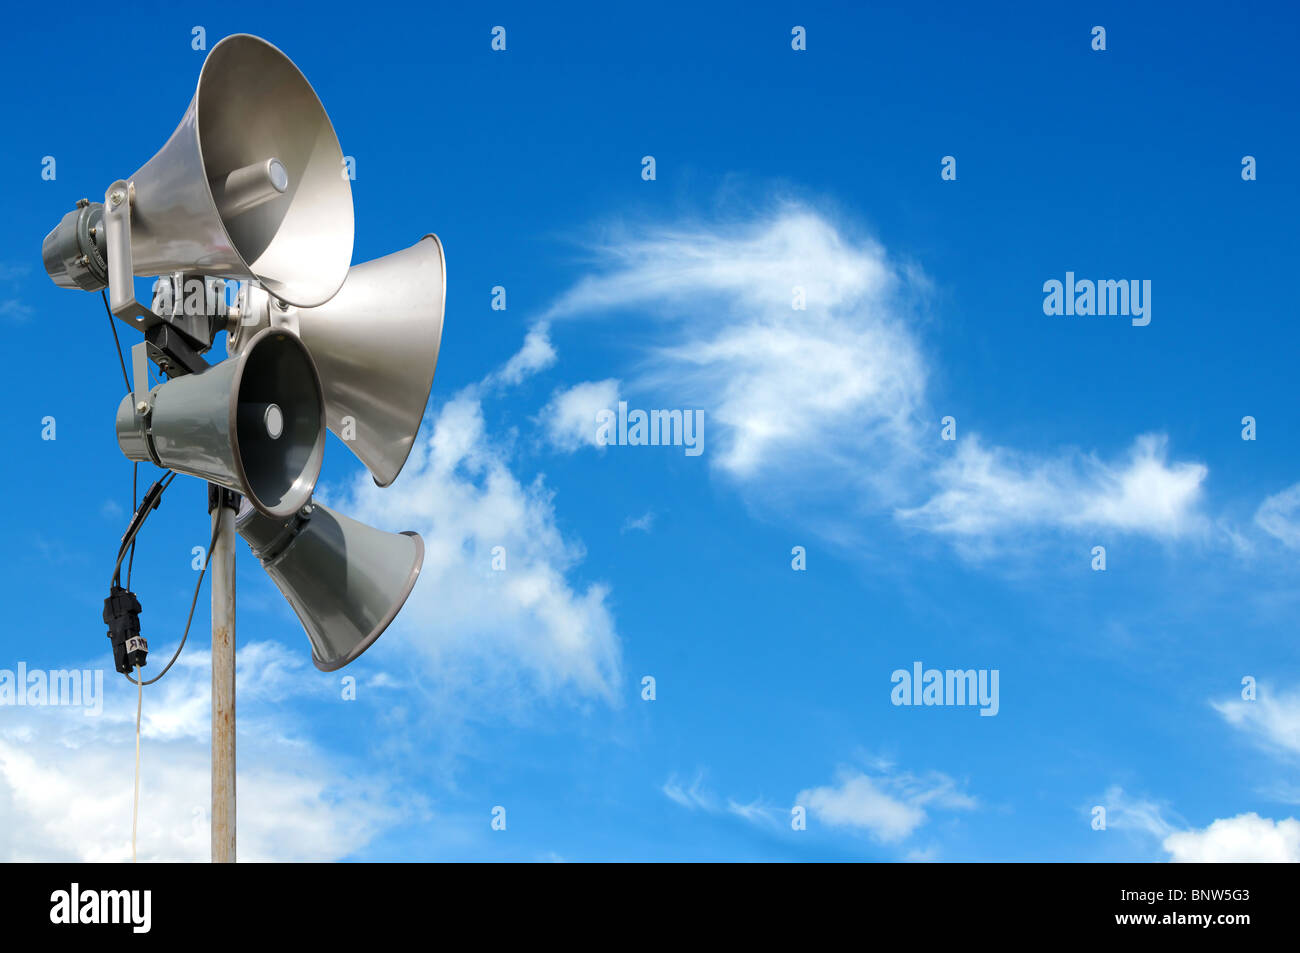 PA / Beschallung Lautsprecher des Systems, gegen ein strahlend blauer Himmel, mit Platz für Ihren Text / Redaktion overlay Stockfoto